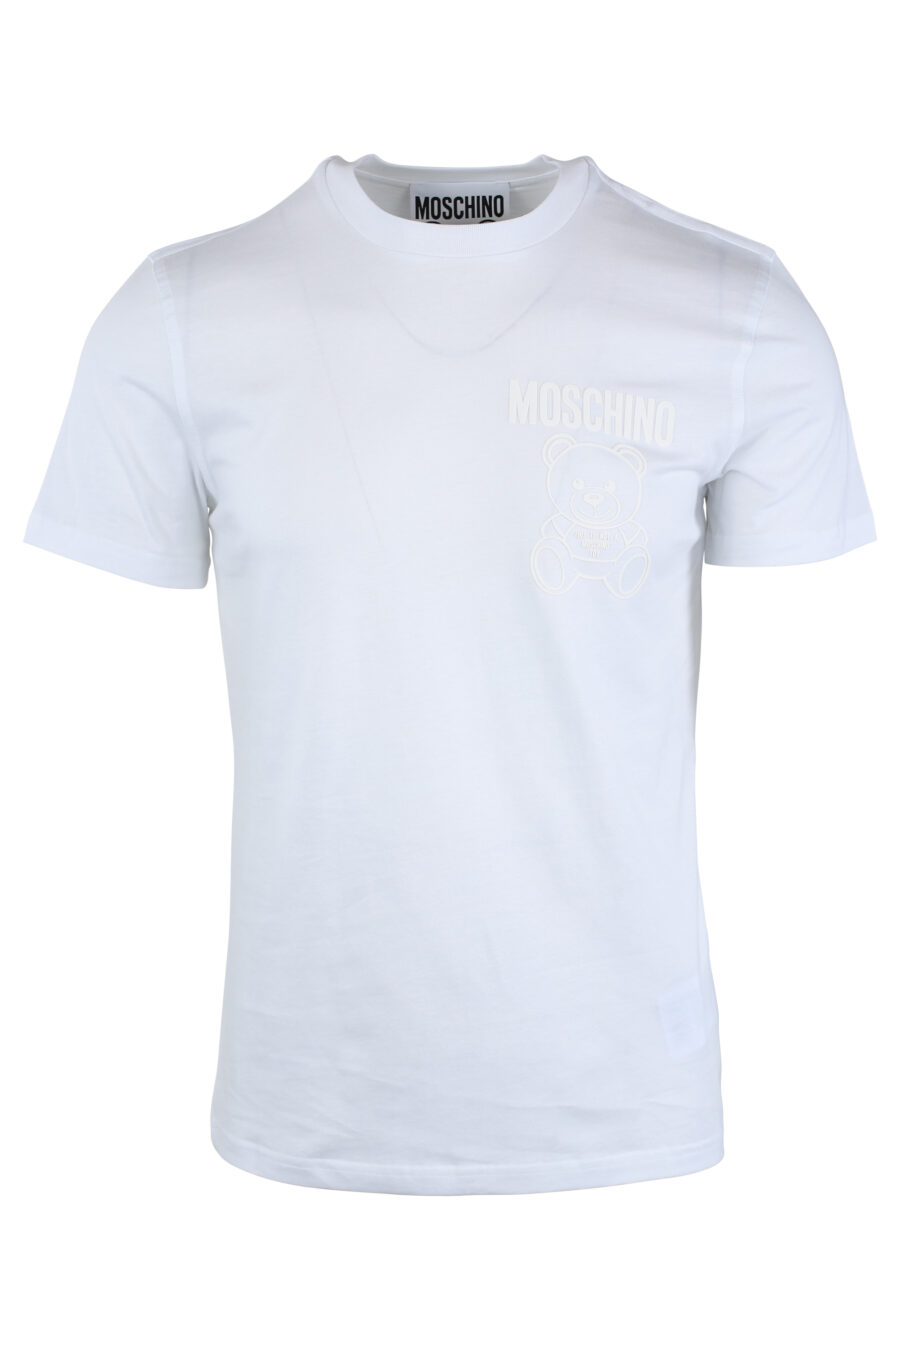 Camiseta blanca con minilogo oso monocromático - IMG 1649